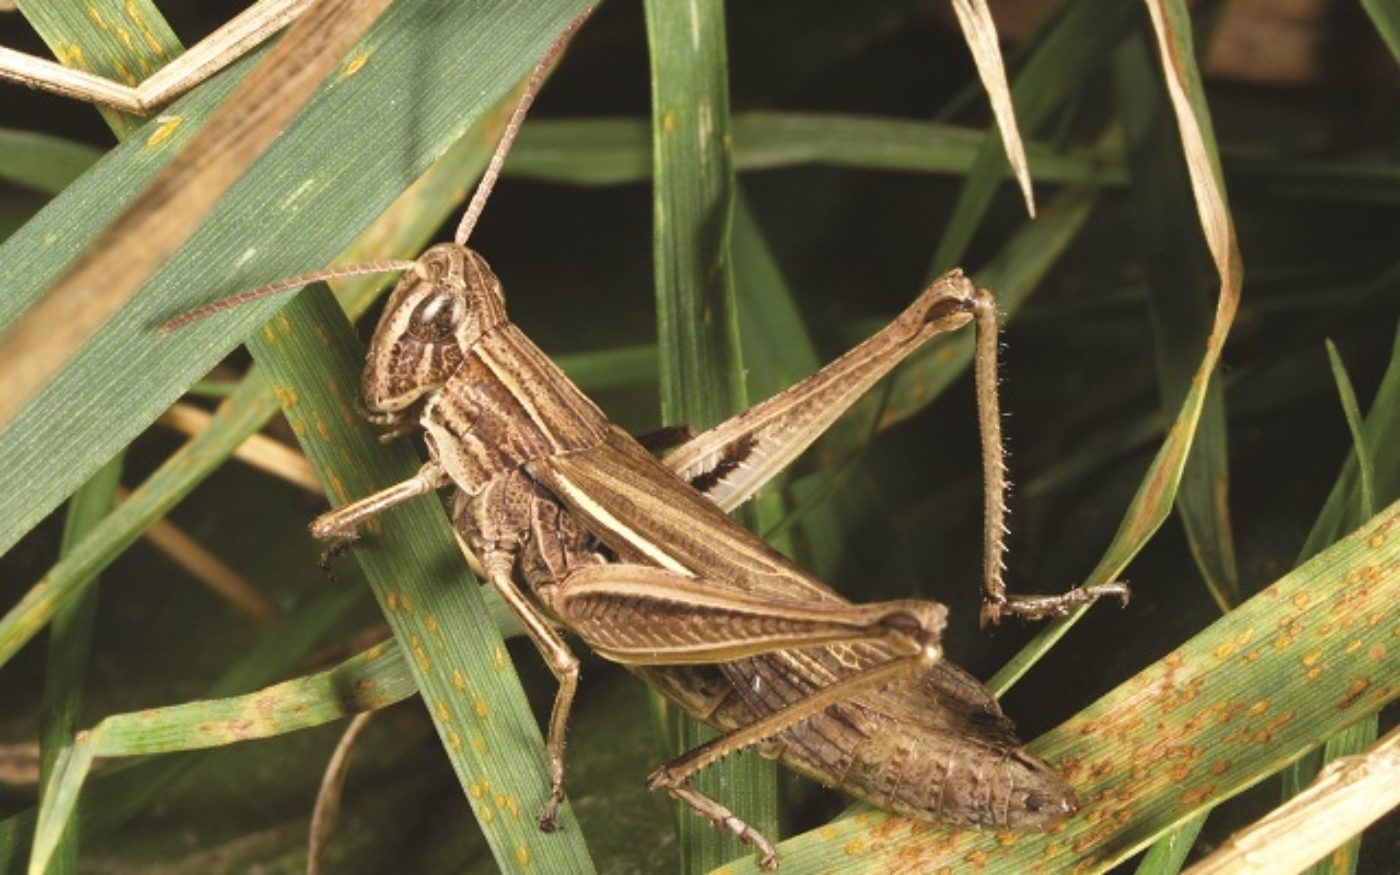 Female Lesser Marsh Grasshopper, Chorthippus albomarginatus